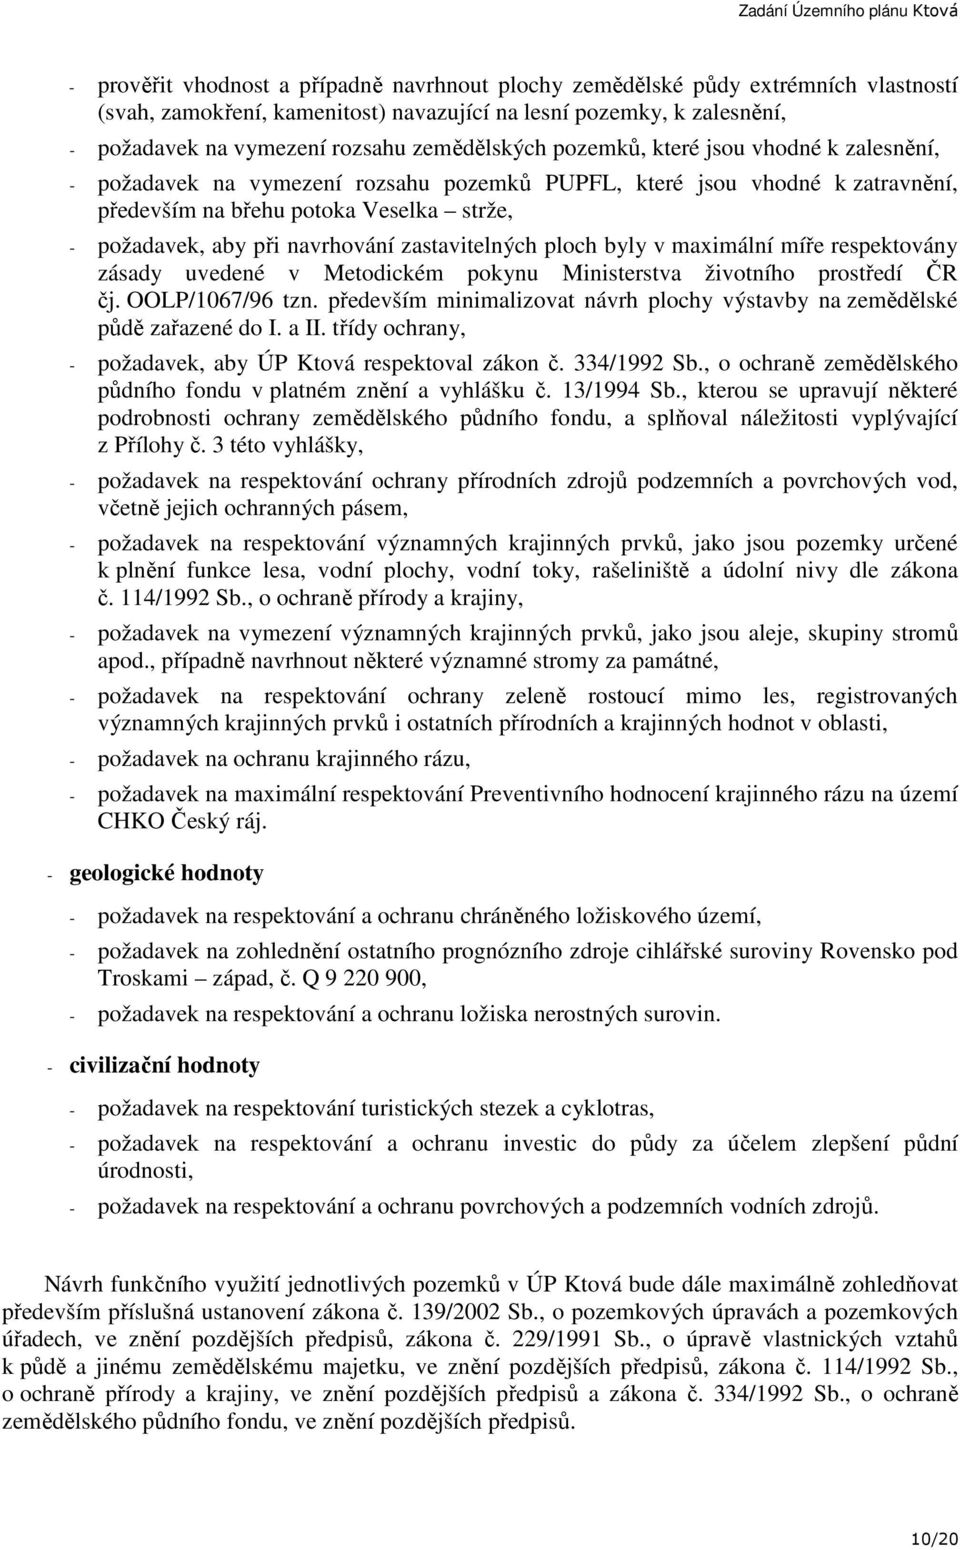 navrhování zastavitelných ploch byly v maximální míře respektovány zásady uvedené v Metodickém pokynu Ministerstva životního prostředí ČR čj. OOLP/1067/96 tzn.